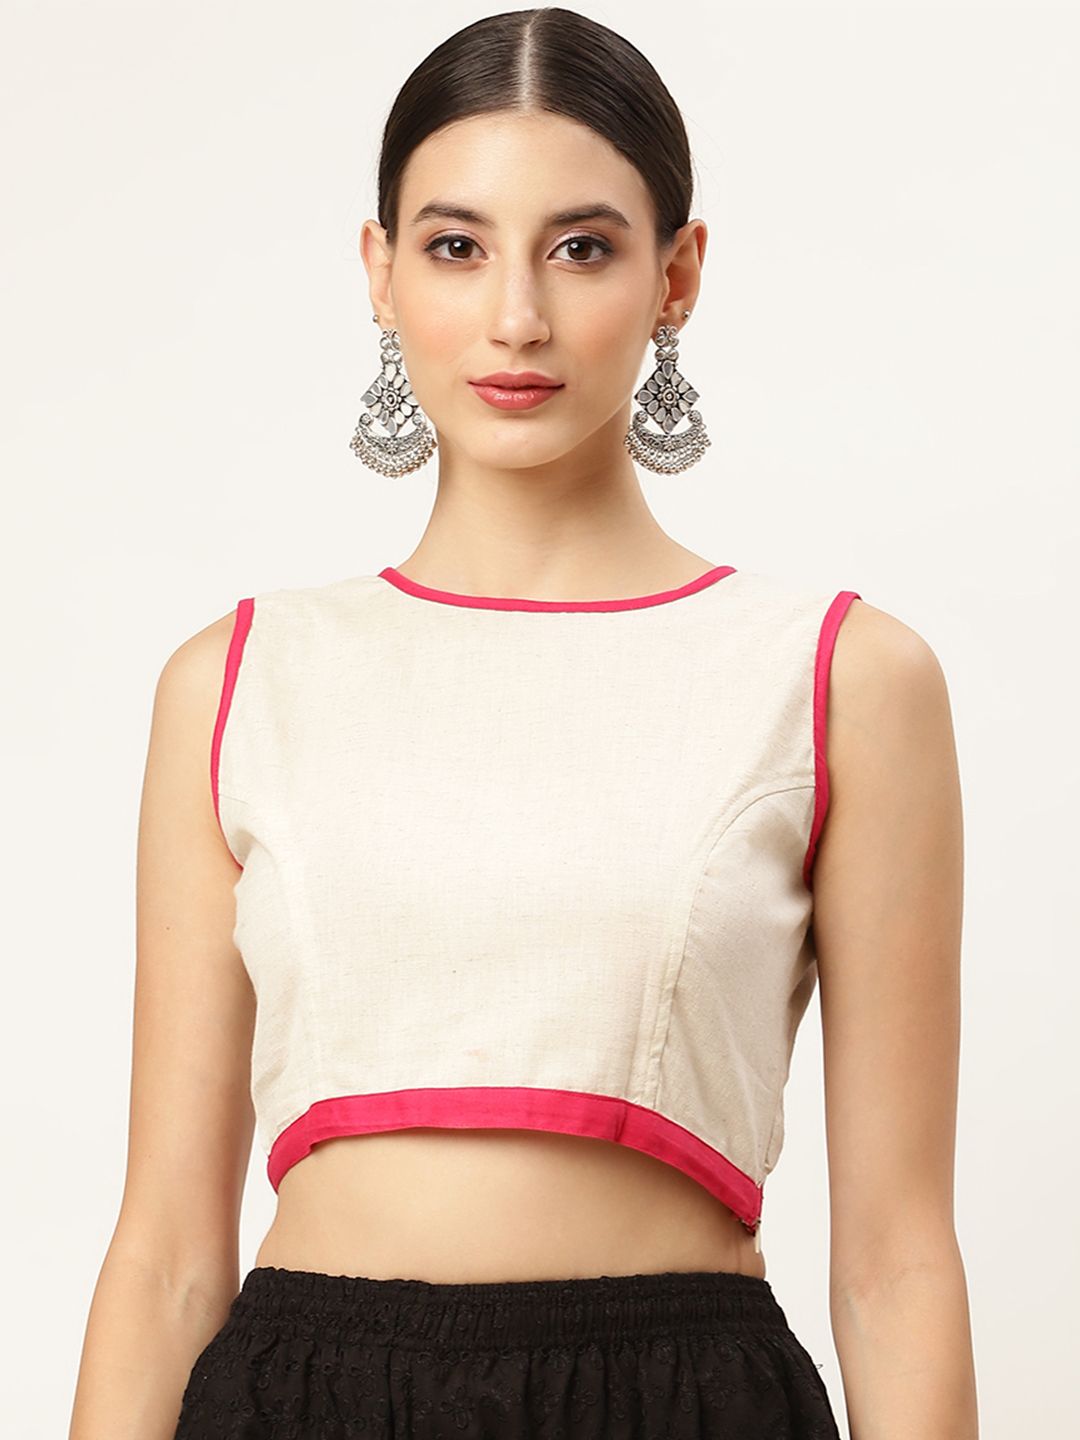 Molcha Women White & Pink Cotton Saree Blouse Price in India